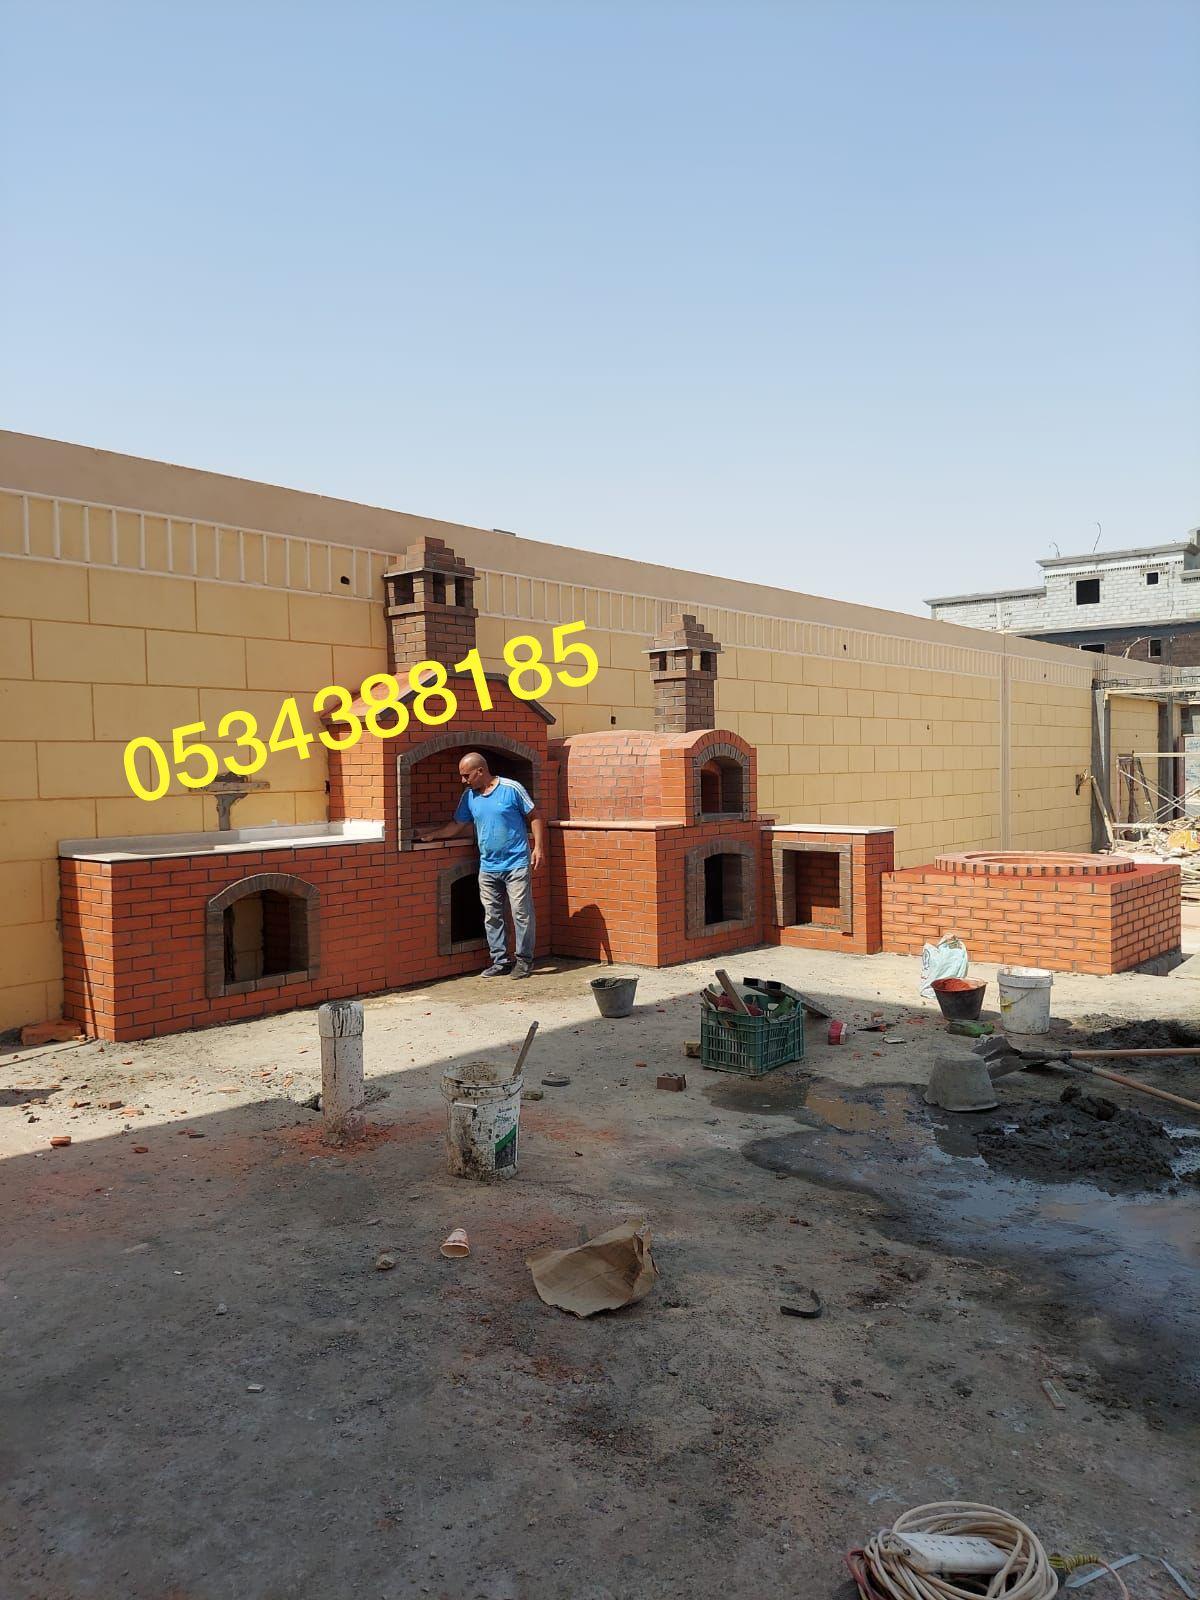 بناء شوايات حجرية للحدائق والمطاعم في الاحساء الهفوف, 0534388185 602352387